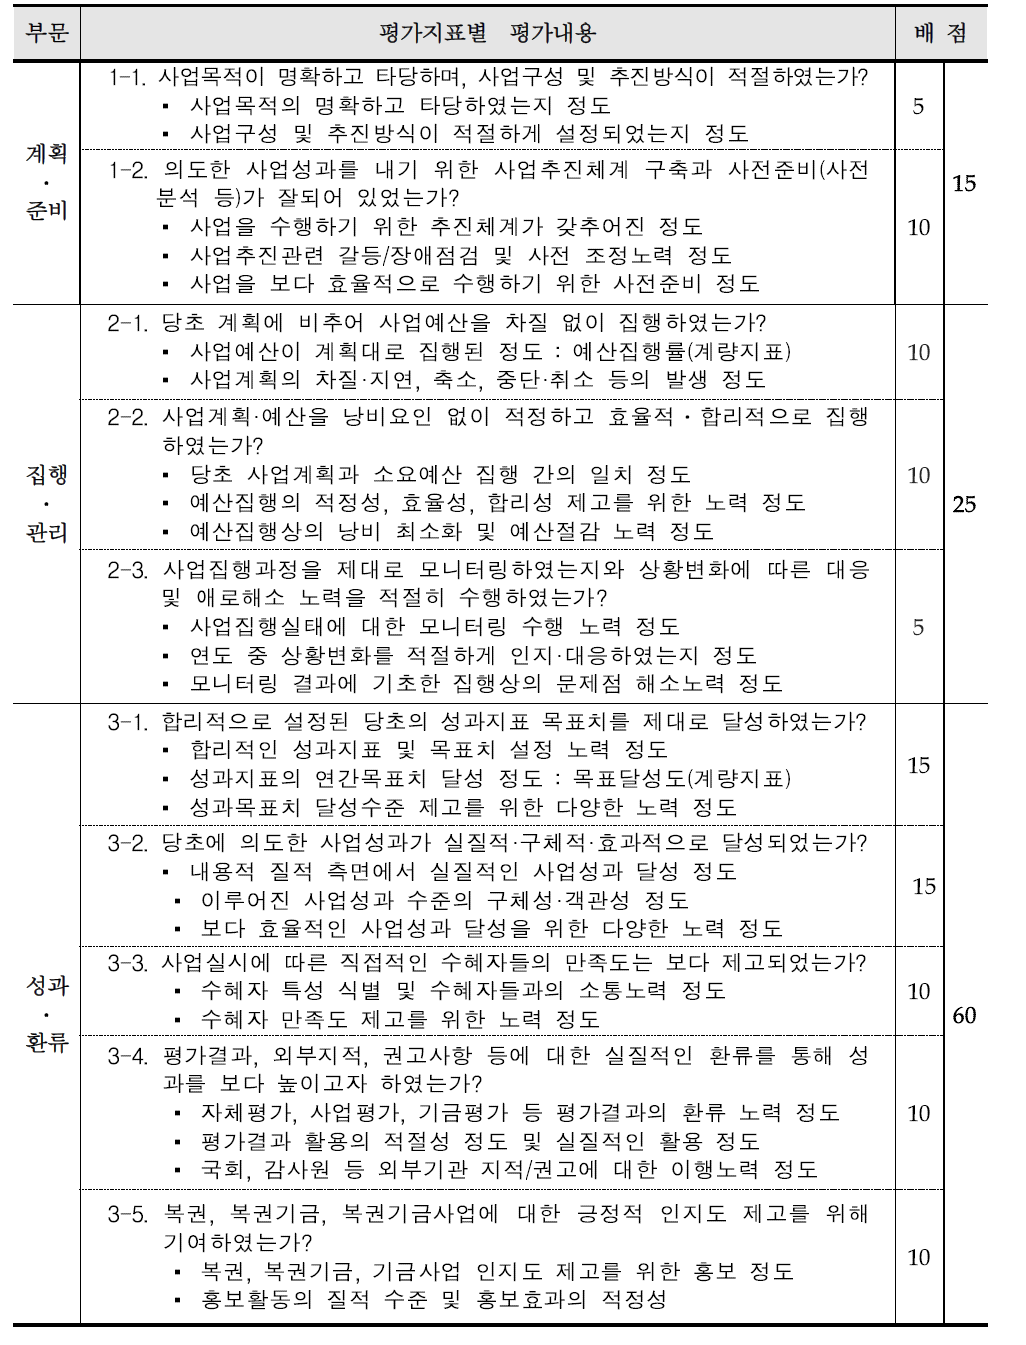 2010년 복권기금 성과평가지표